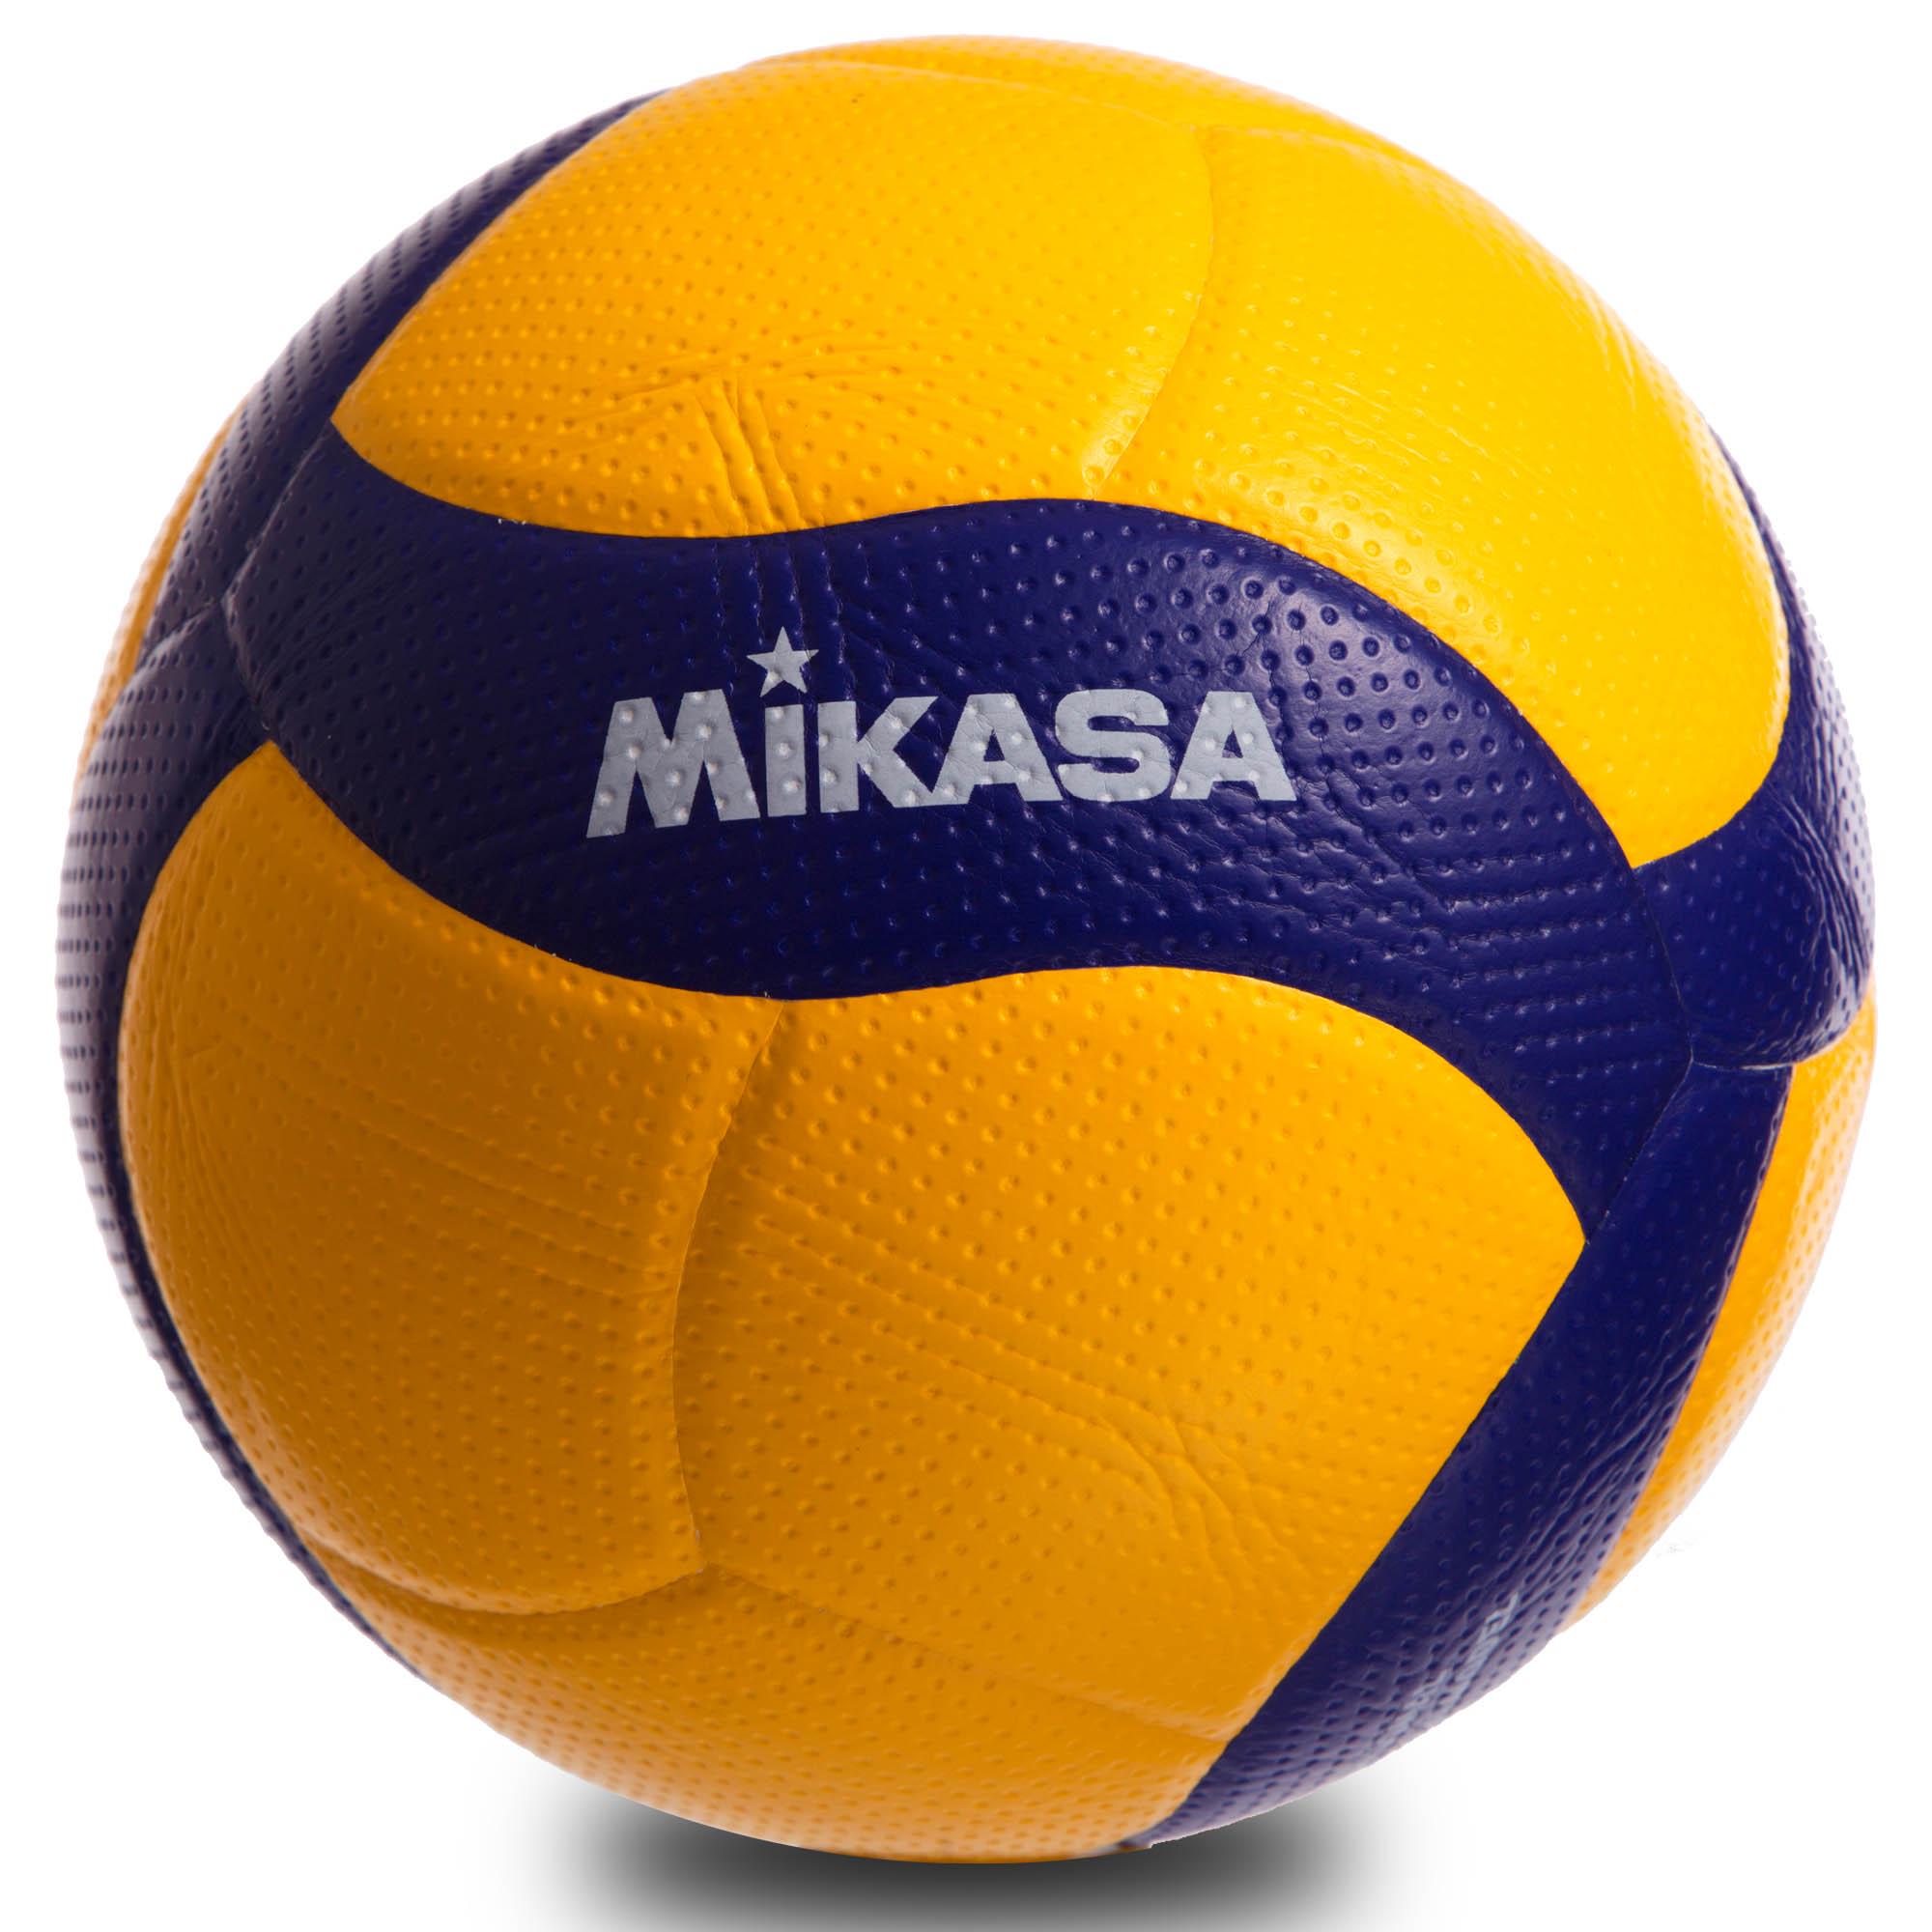 Волейбольный мяч на зеленом фоне